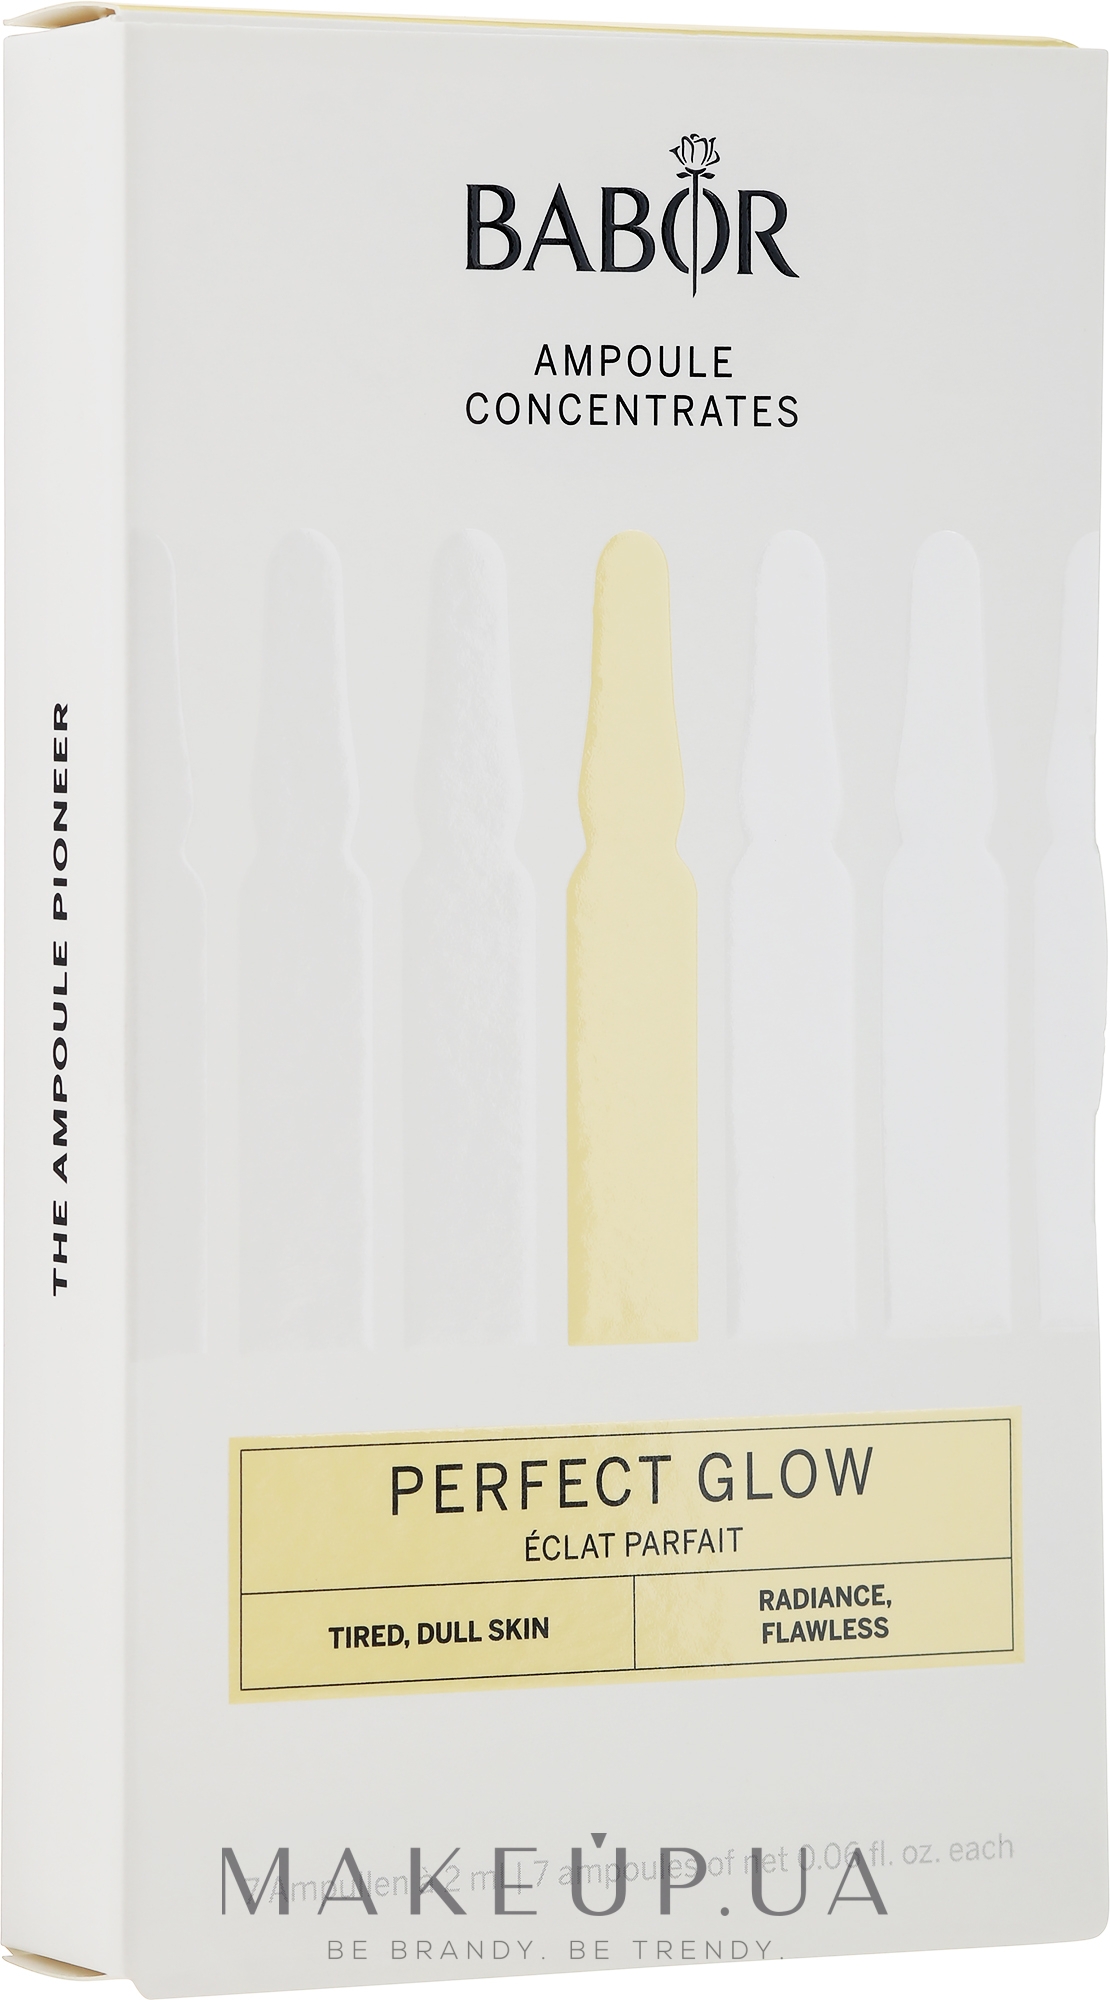 Ампулы для лица "Идеальное сияние" - Babor Ampoule Concentrates Perfect Glow — фото 7x2ml